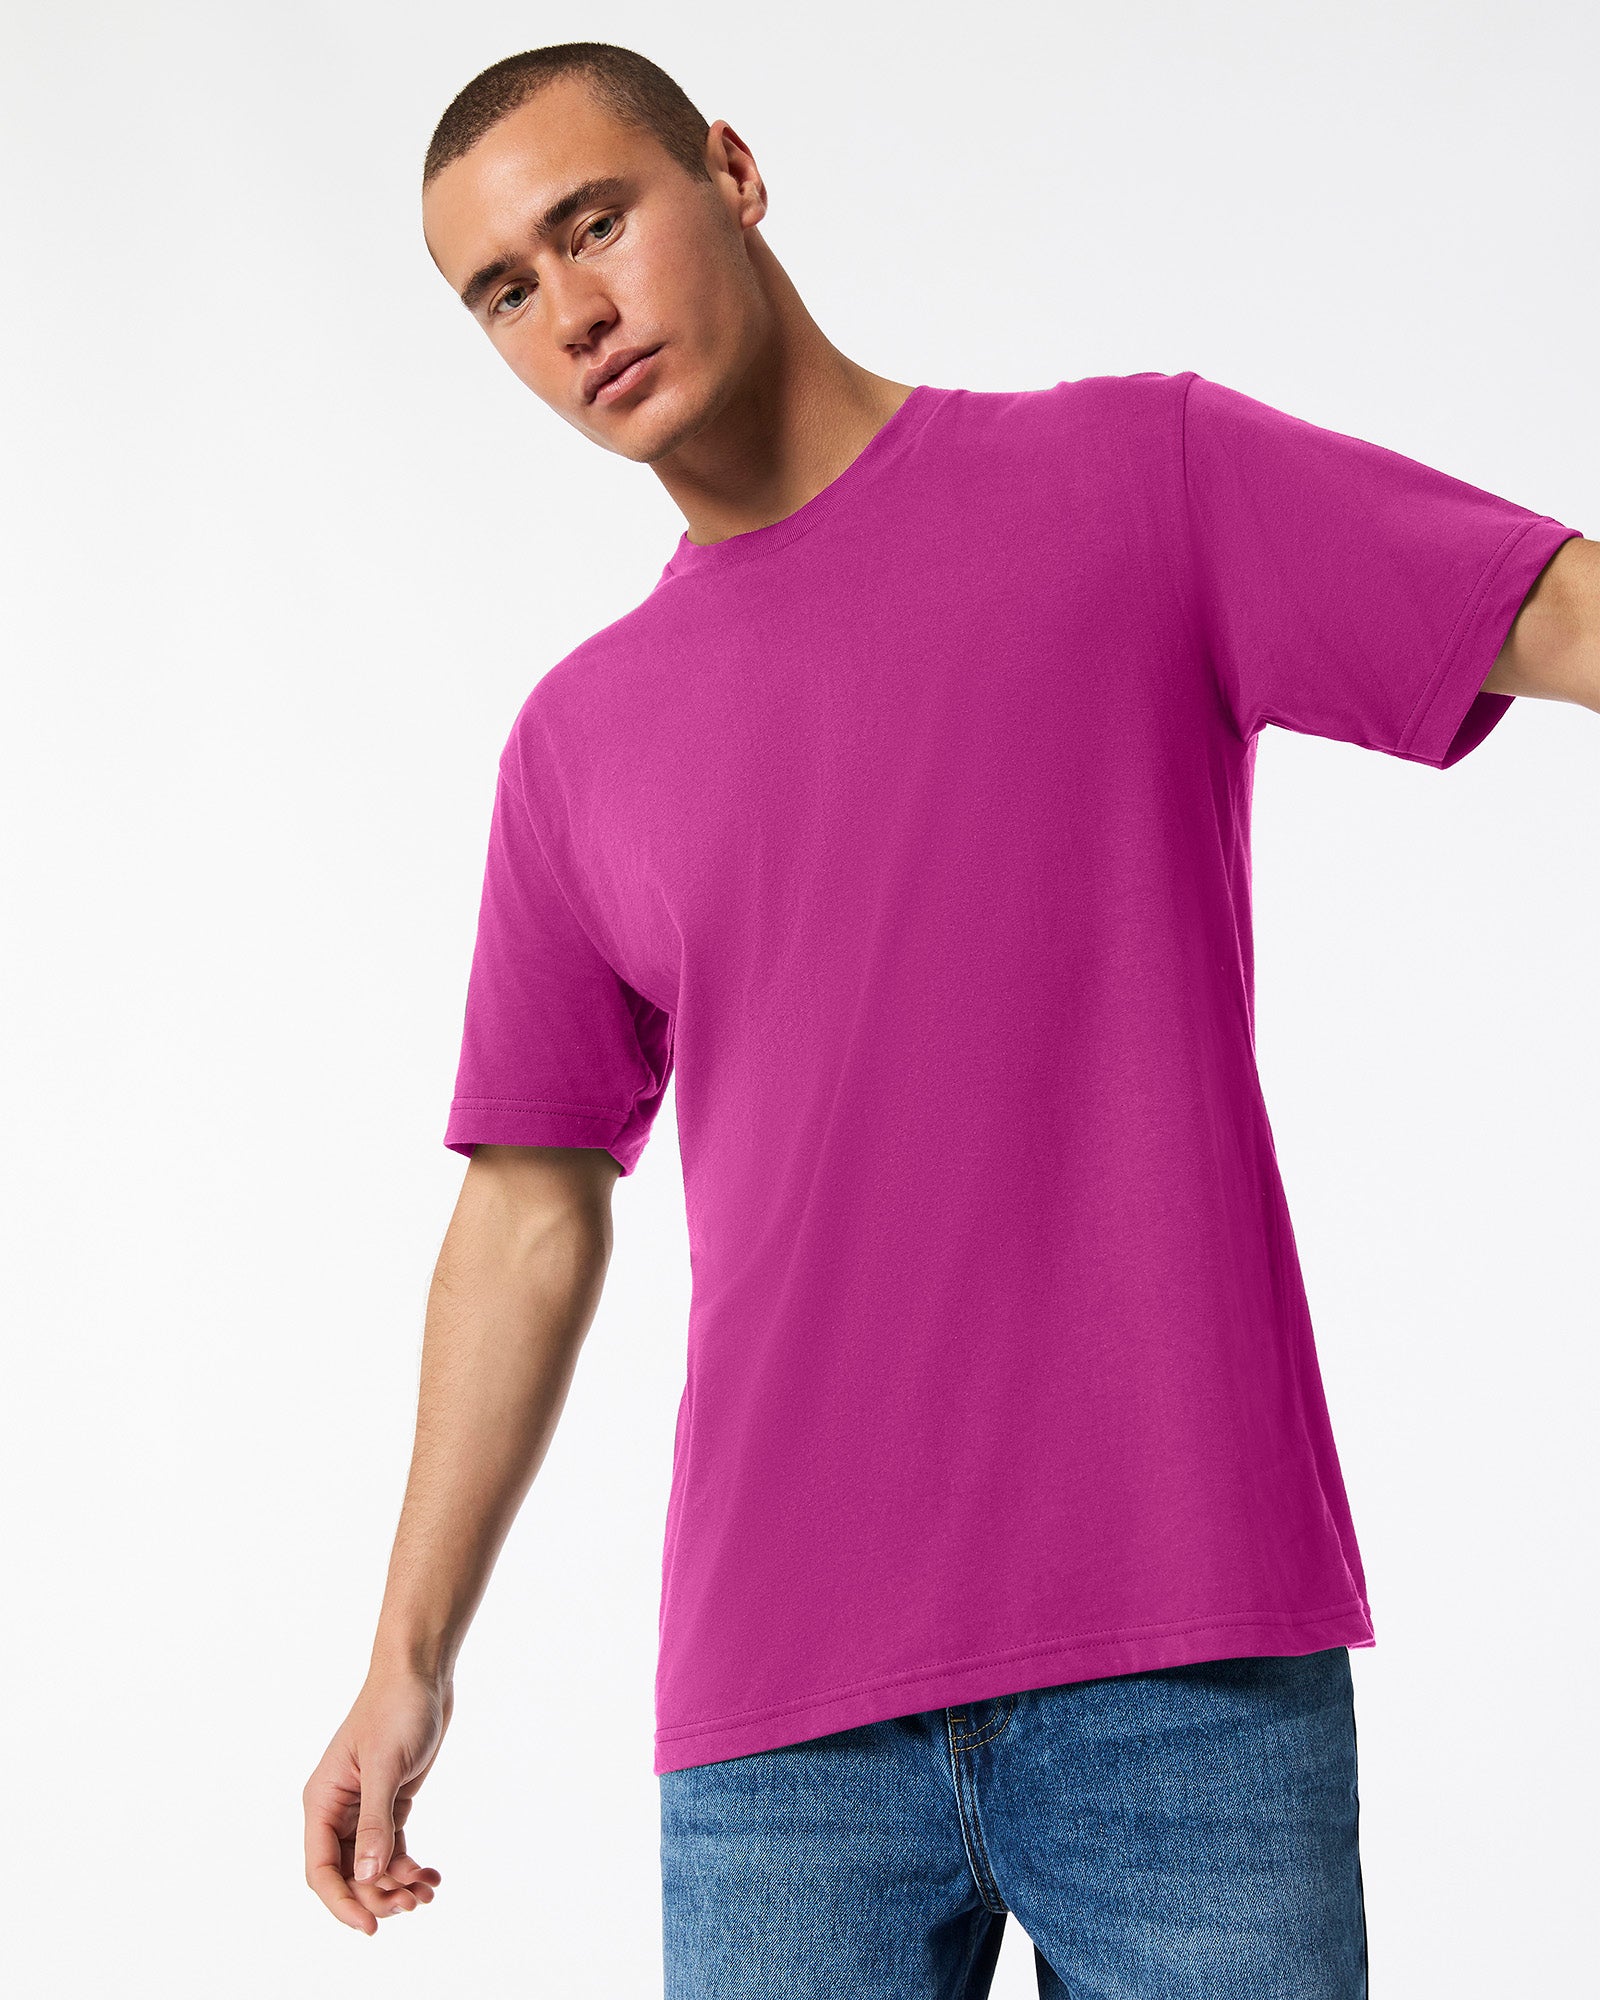 Fine Jersey Unisex Short Sleeve T-Shirt - Super Pink